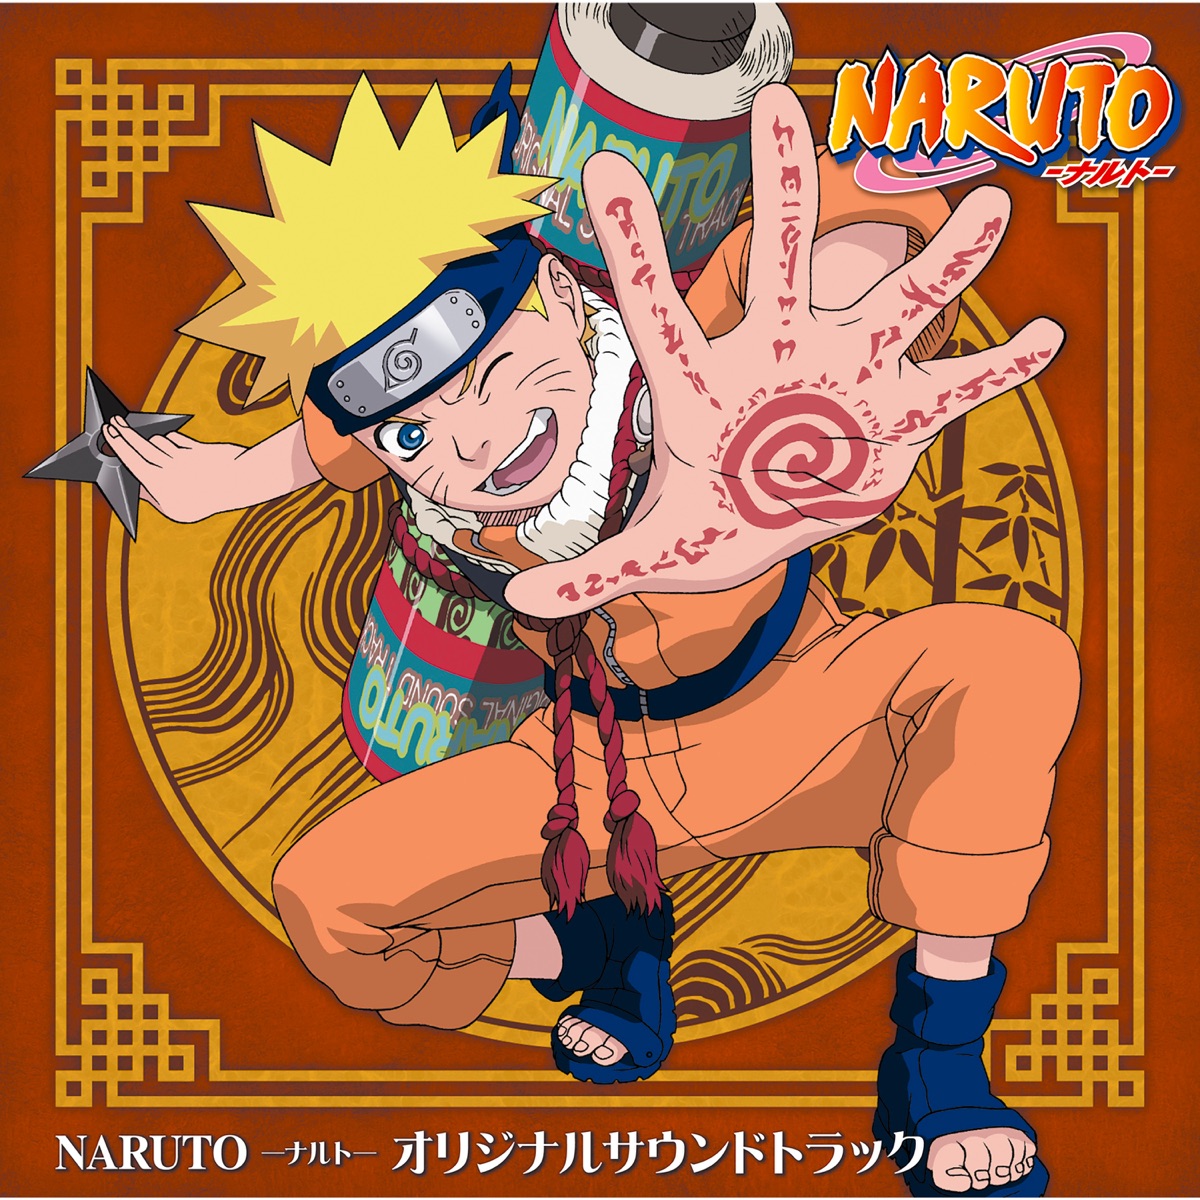 Naruto Online chega ao Brasil em breve com cinco classes disponíveis